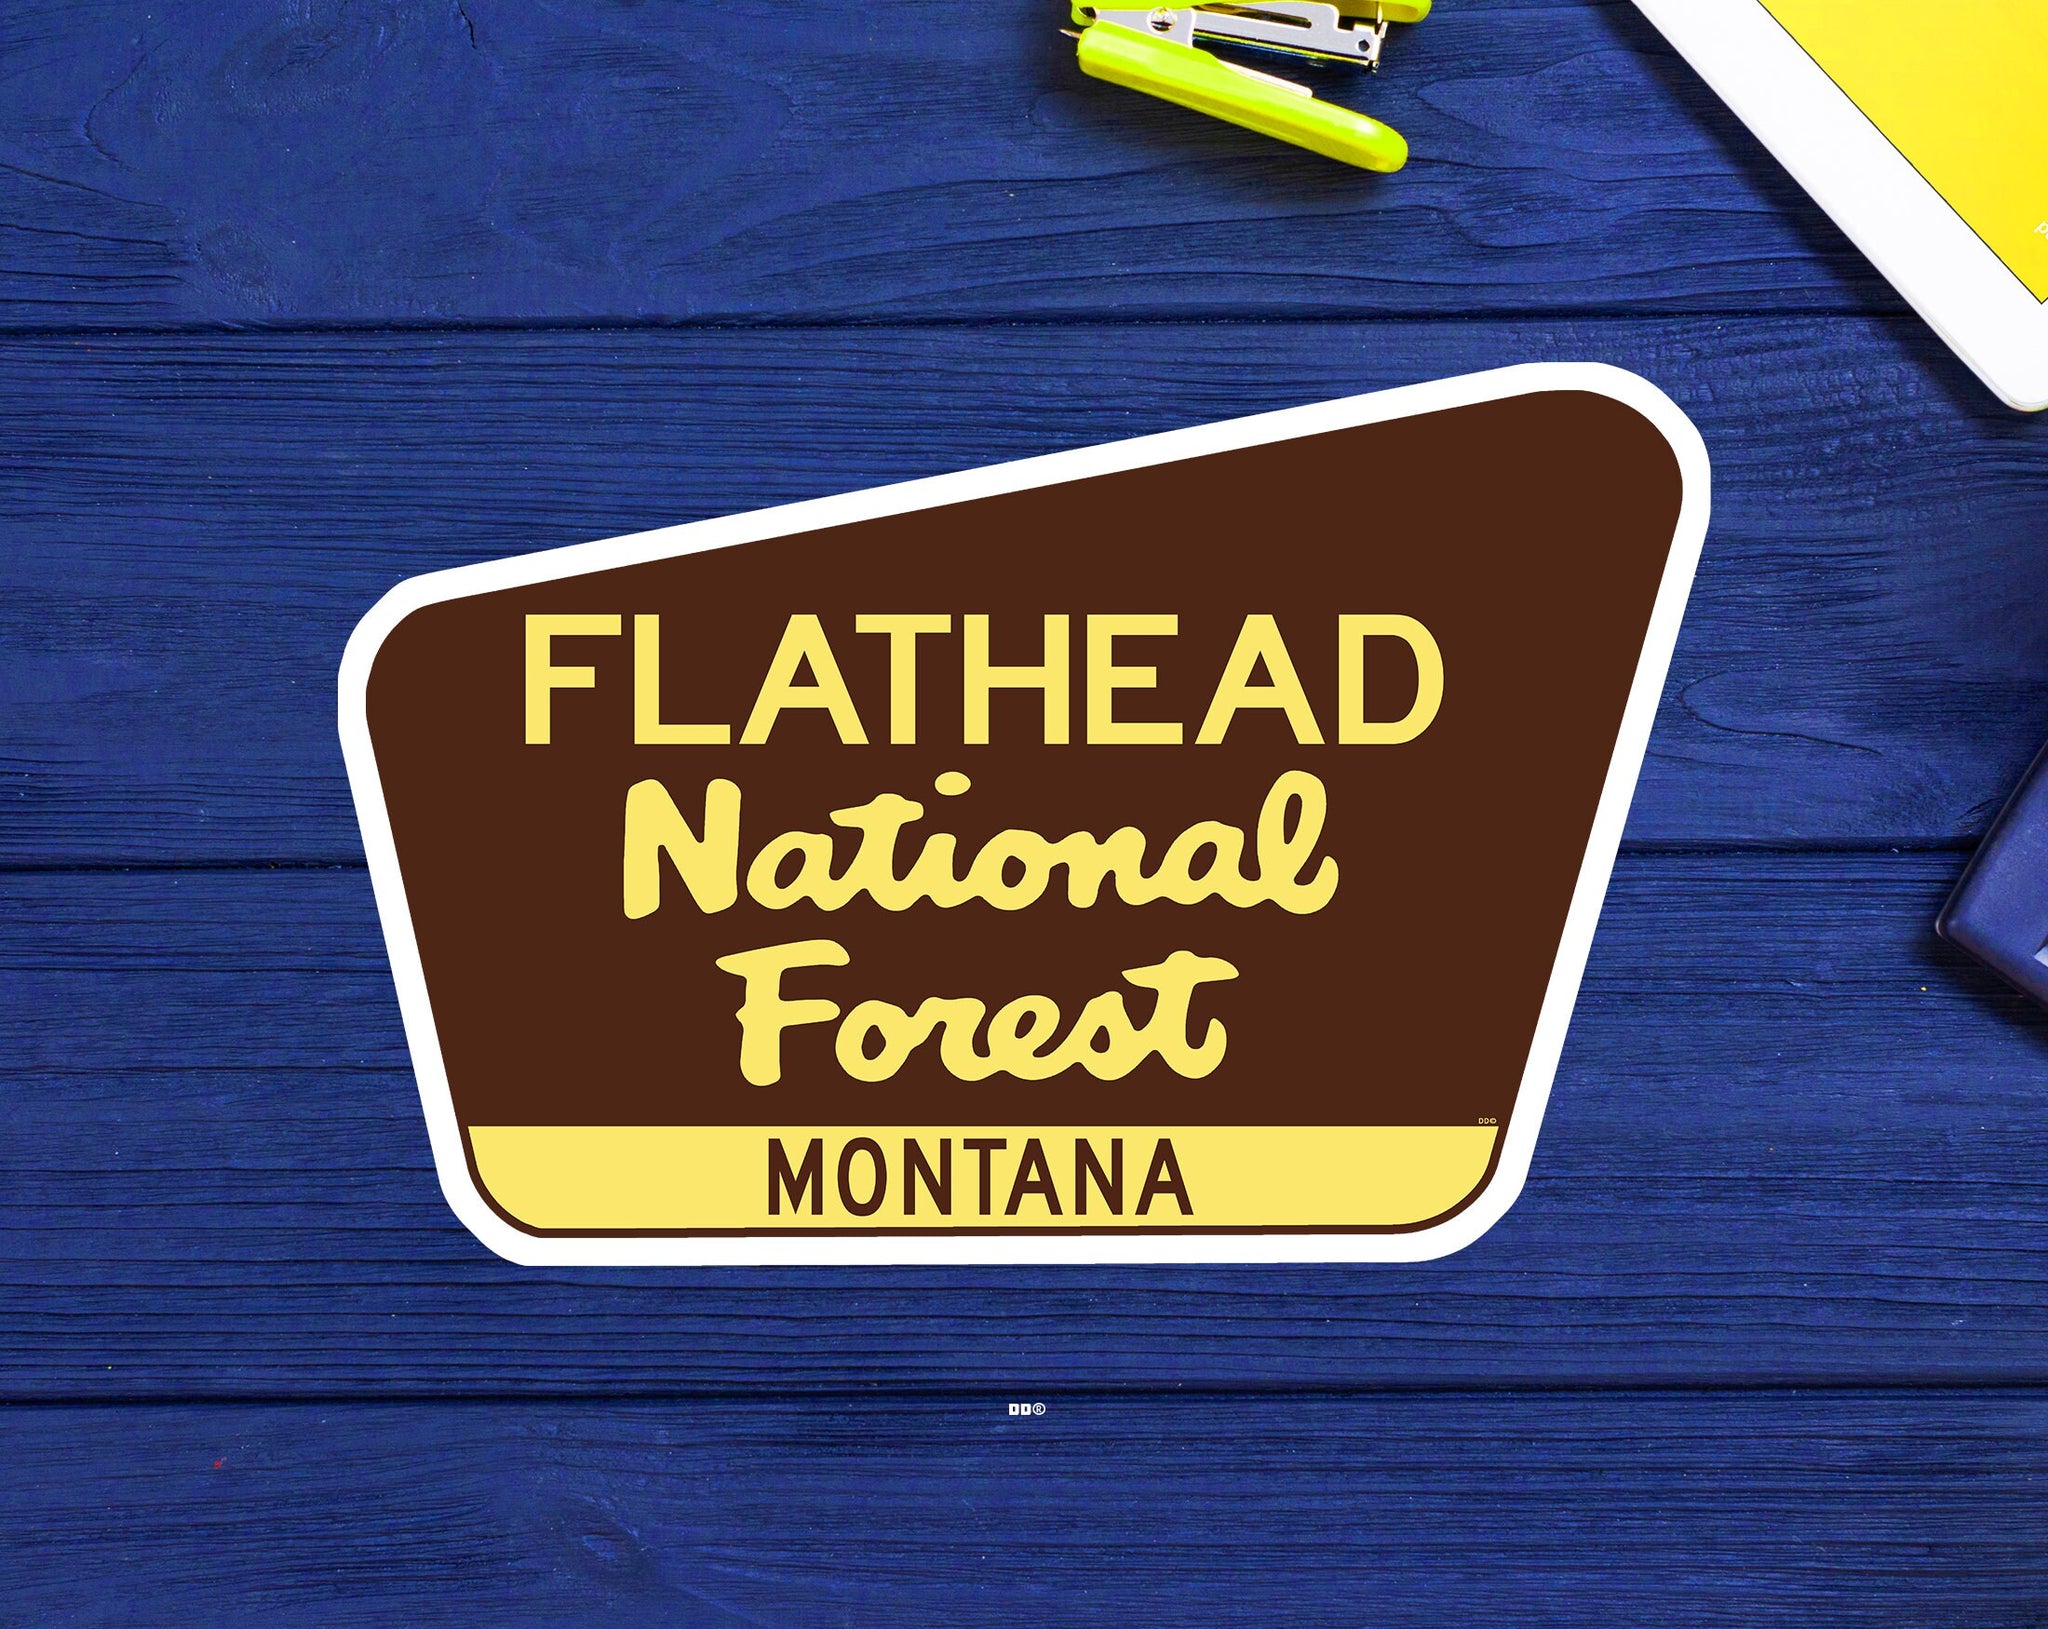 Flathead National Forest Decal Sticker 3.75" x 2.5" Montana Park Vinyl